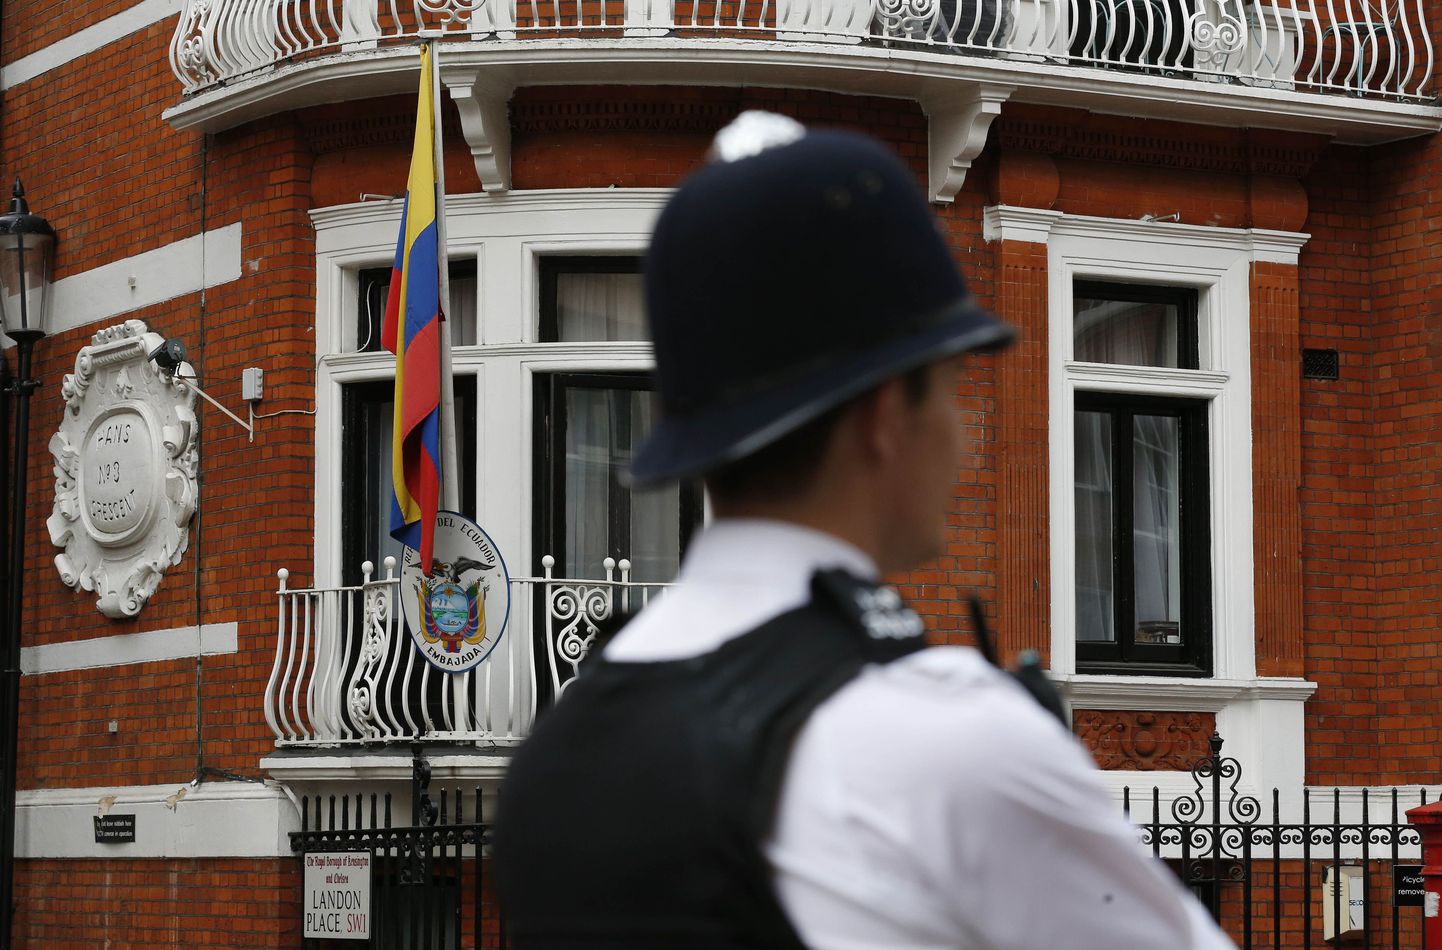 Briti politseinik peab valvet Londonis asuva Ecuadori saatkonna ees. Hoones redutab WikiLeaksi asutaja Julian Assange.